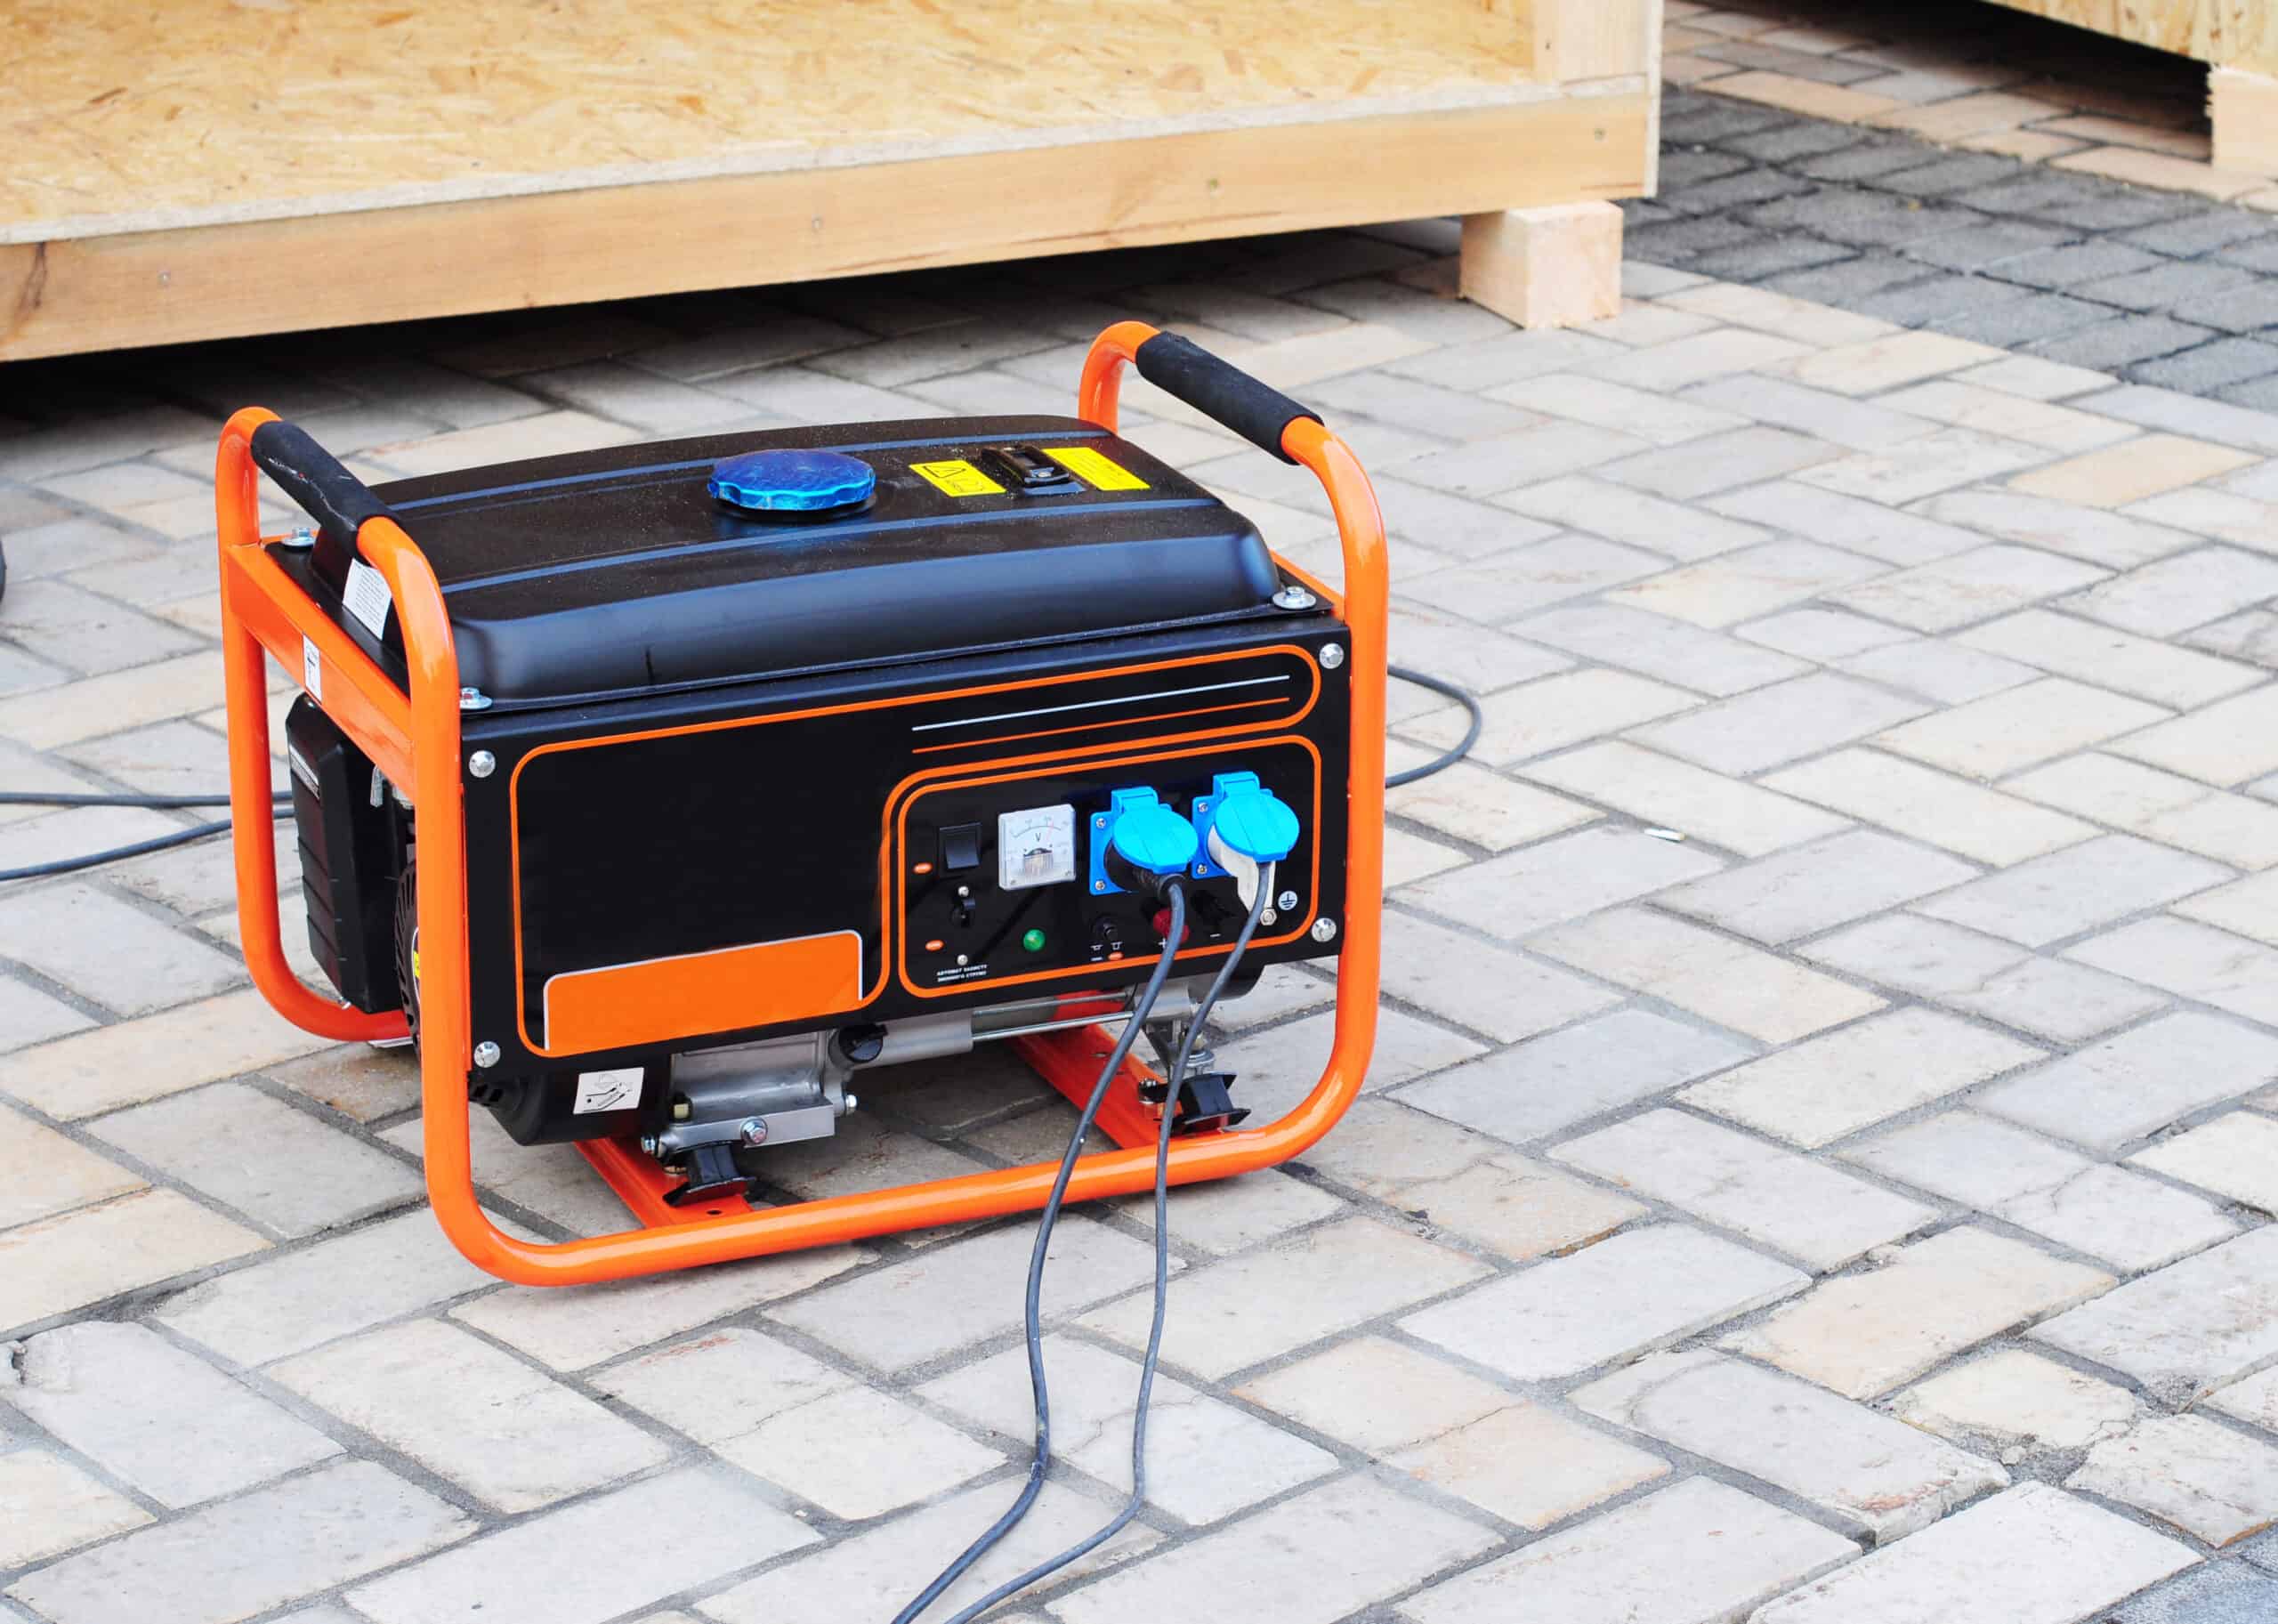 A portable generator runs outdoors.